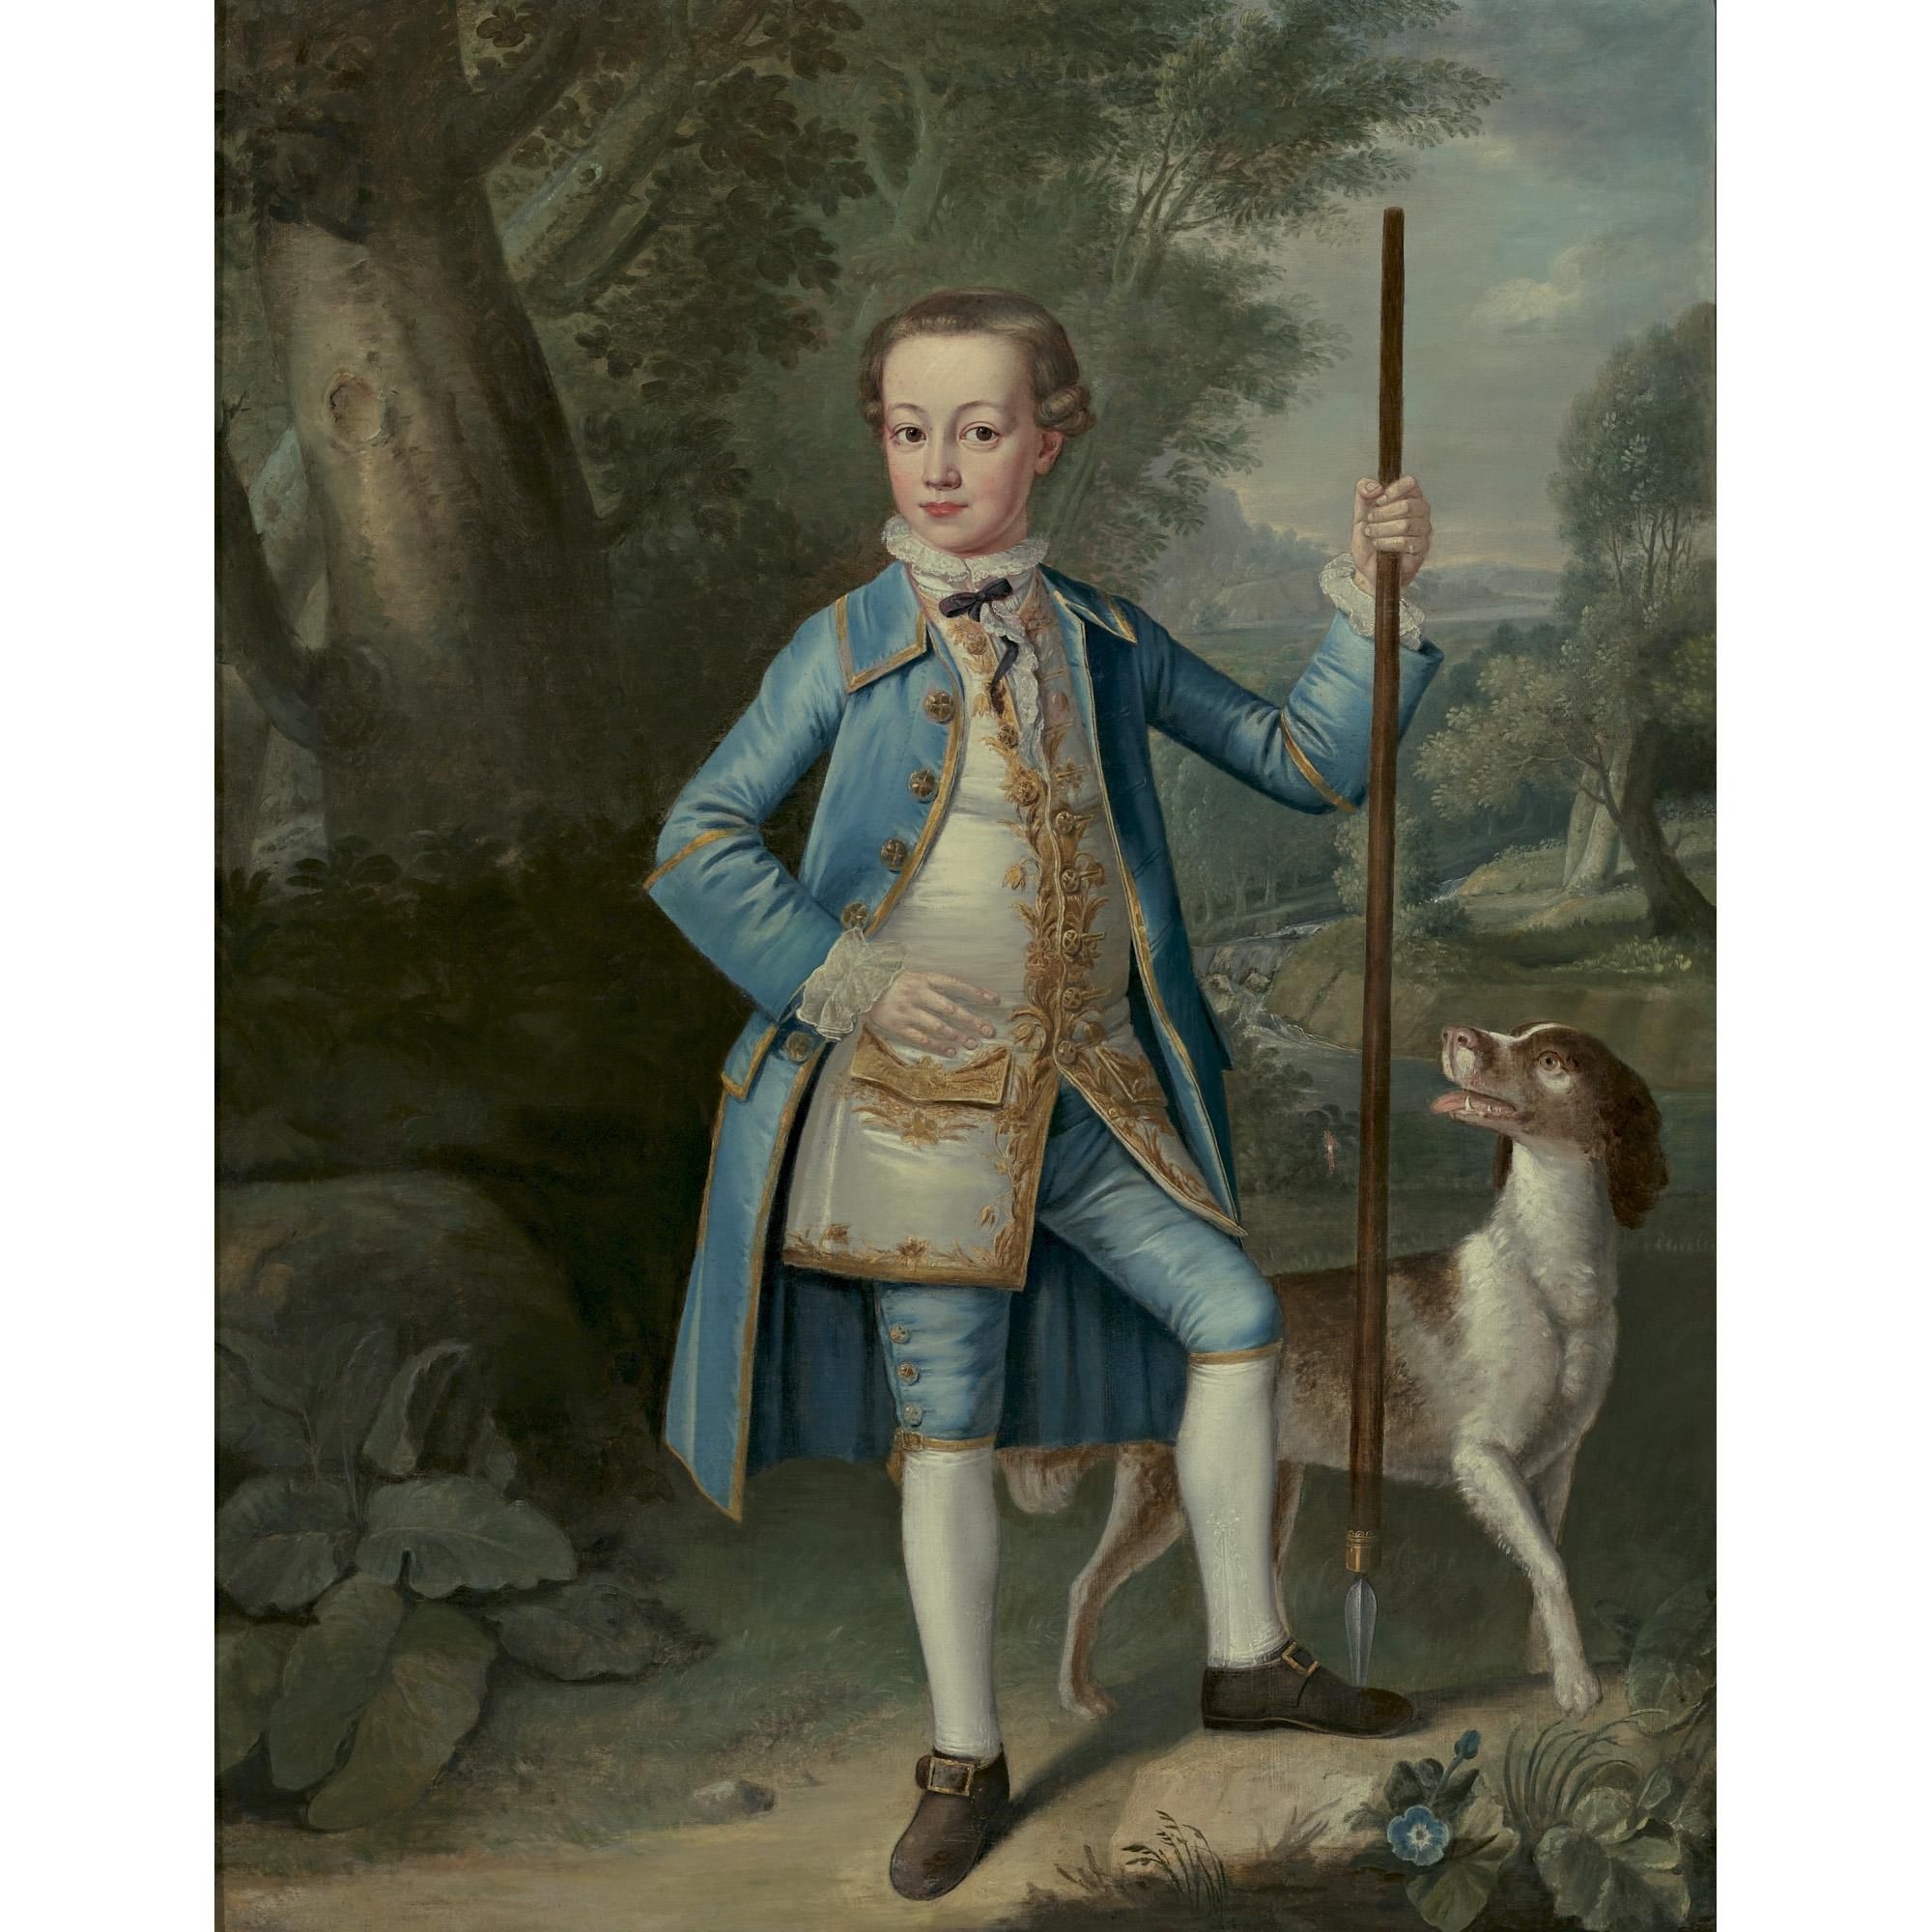 Мальчики 18 века. Художник Bartholomew Dandridge. «Мальчик в голубом» (1770). Гейнсборо мальчик в голубом.